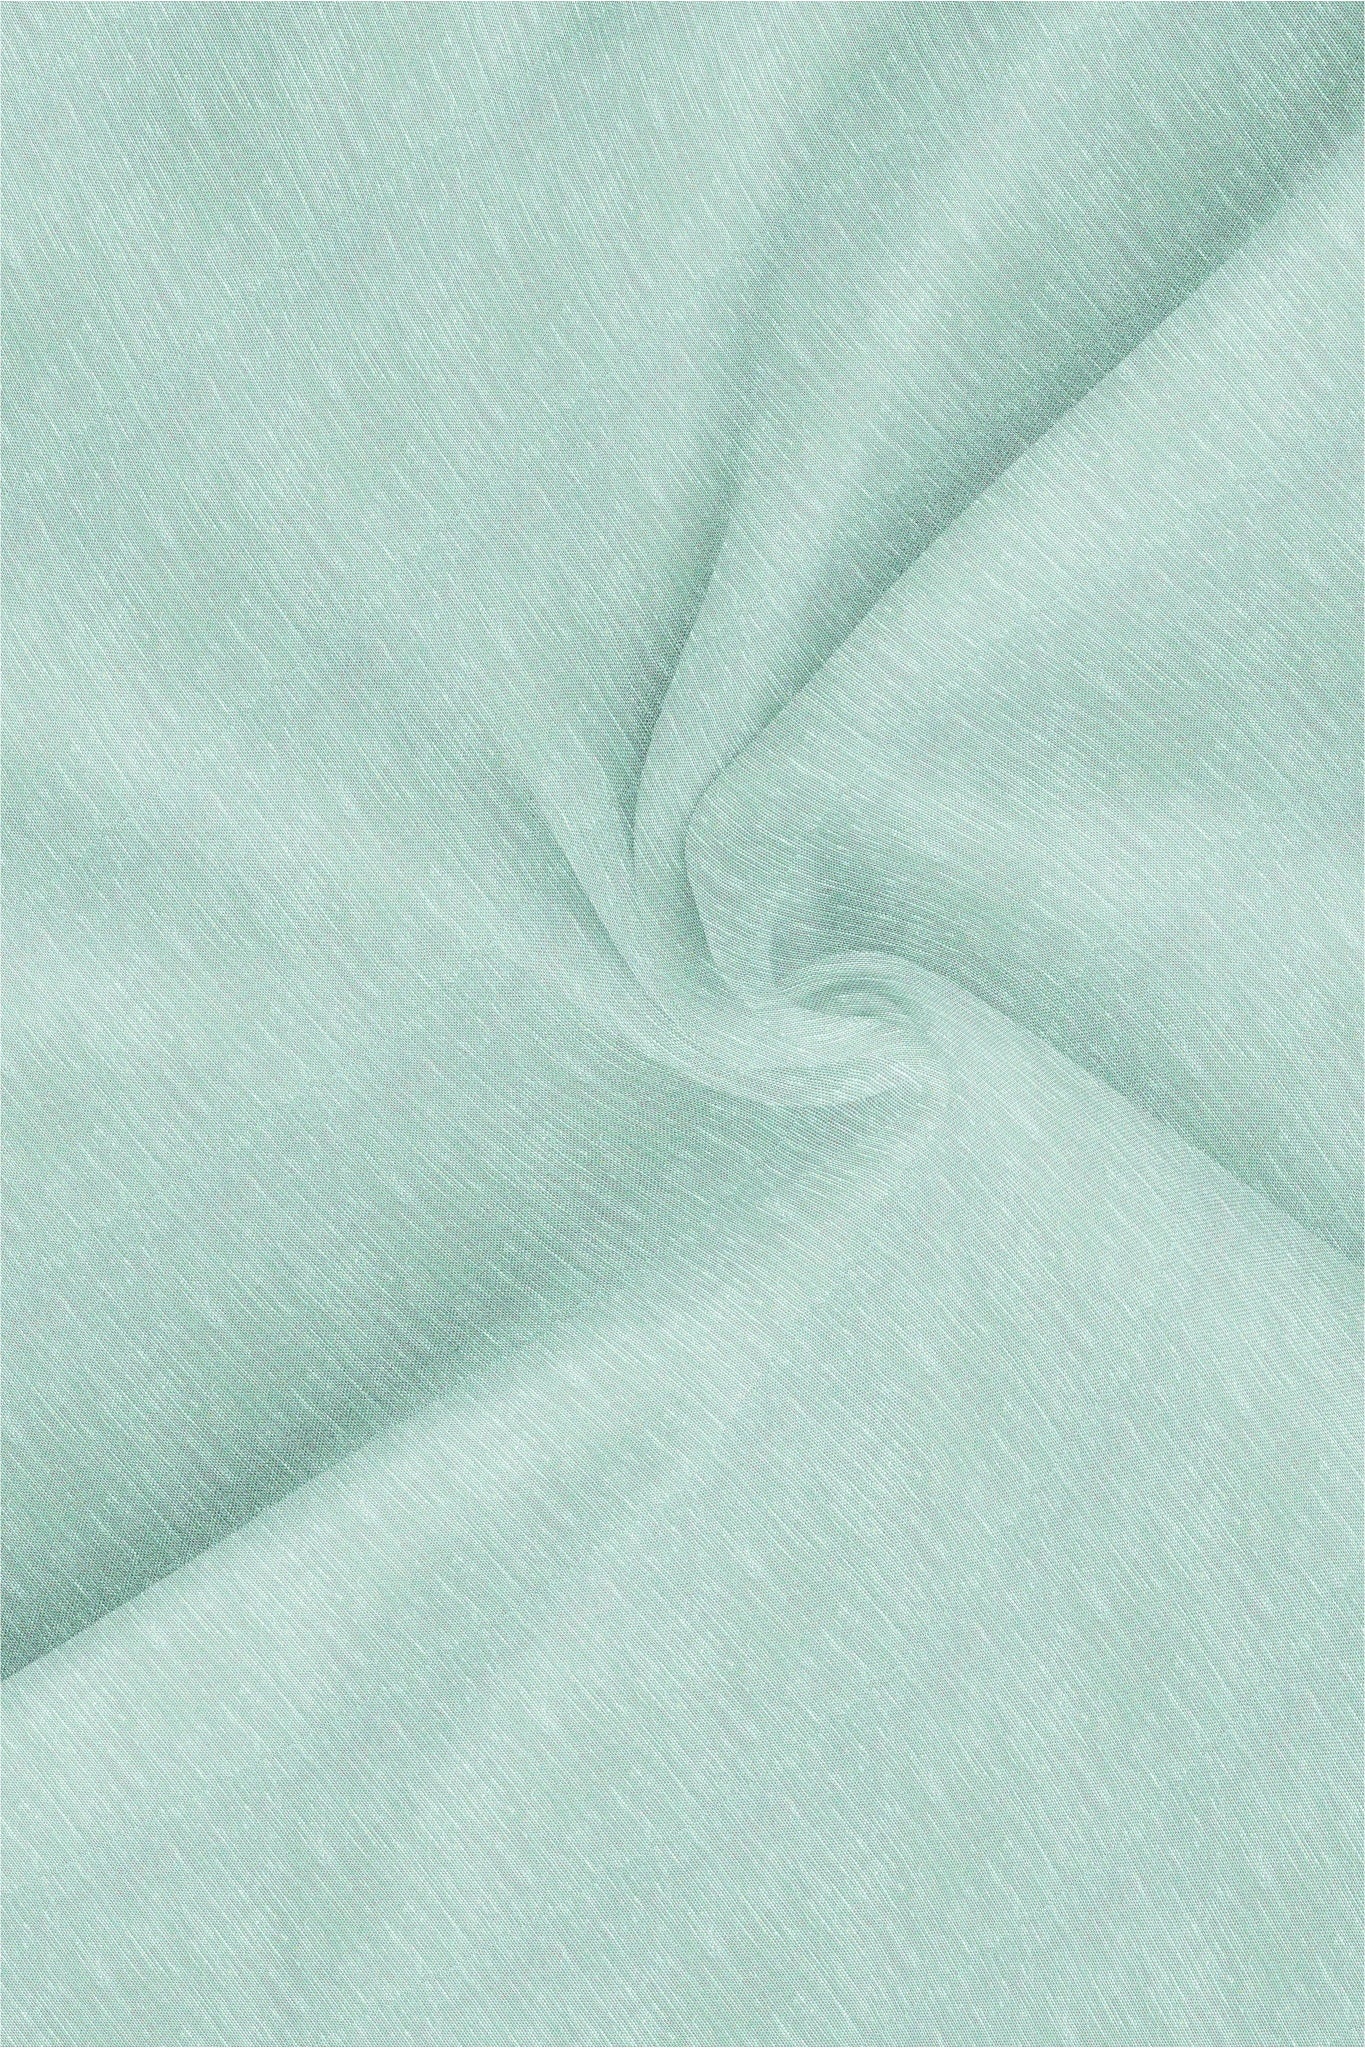 Mint Green Cotton Linen Shirt